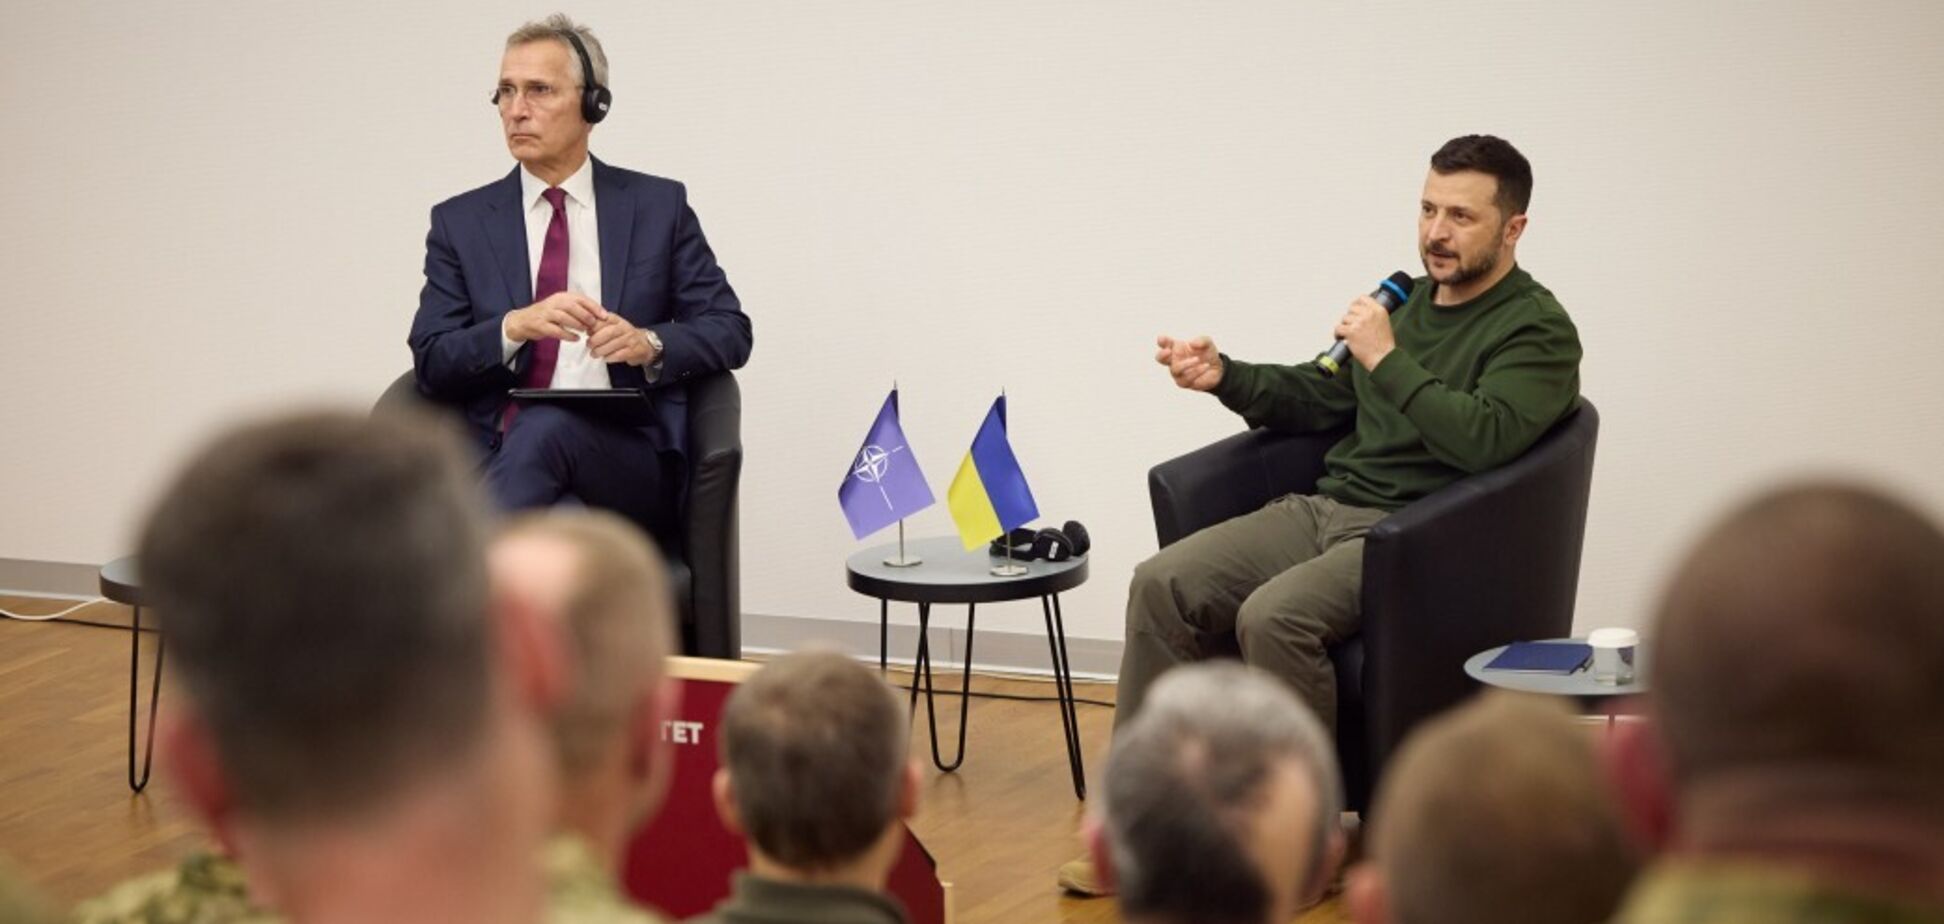 Зеленський і Столтенберг зустрілися з офіцерами, які проходять курси військової освіти за стандартами НАТО. Відео